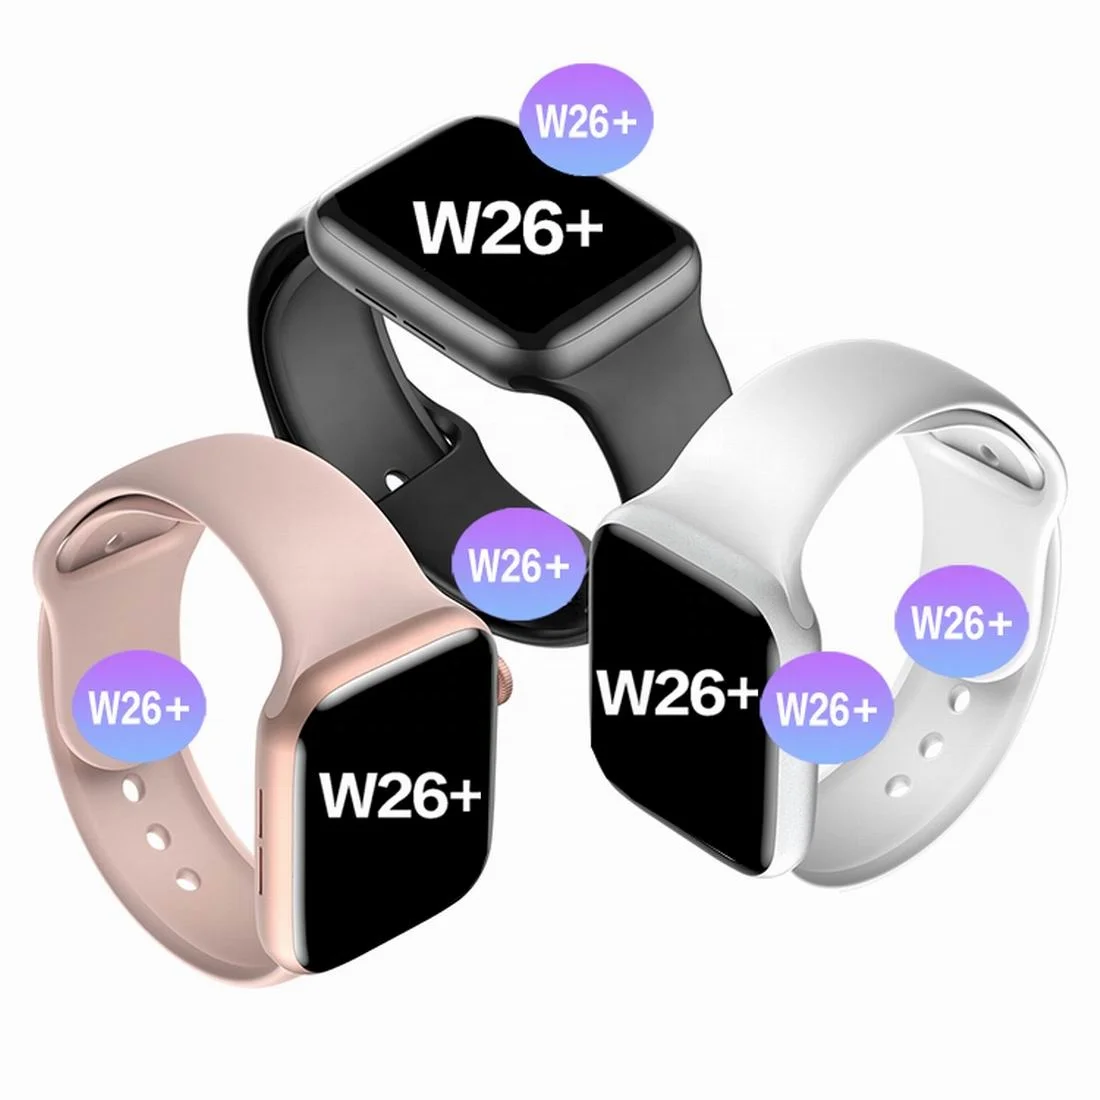 

W26+ W26 Smartwatch W26 2021 W26+ Smartwatch Mactive App Bt Call Iwo Series Serie 6 Reloj Inteligente W26 Plus Pro Smart Watch, Customized colors